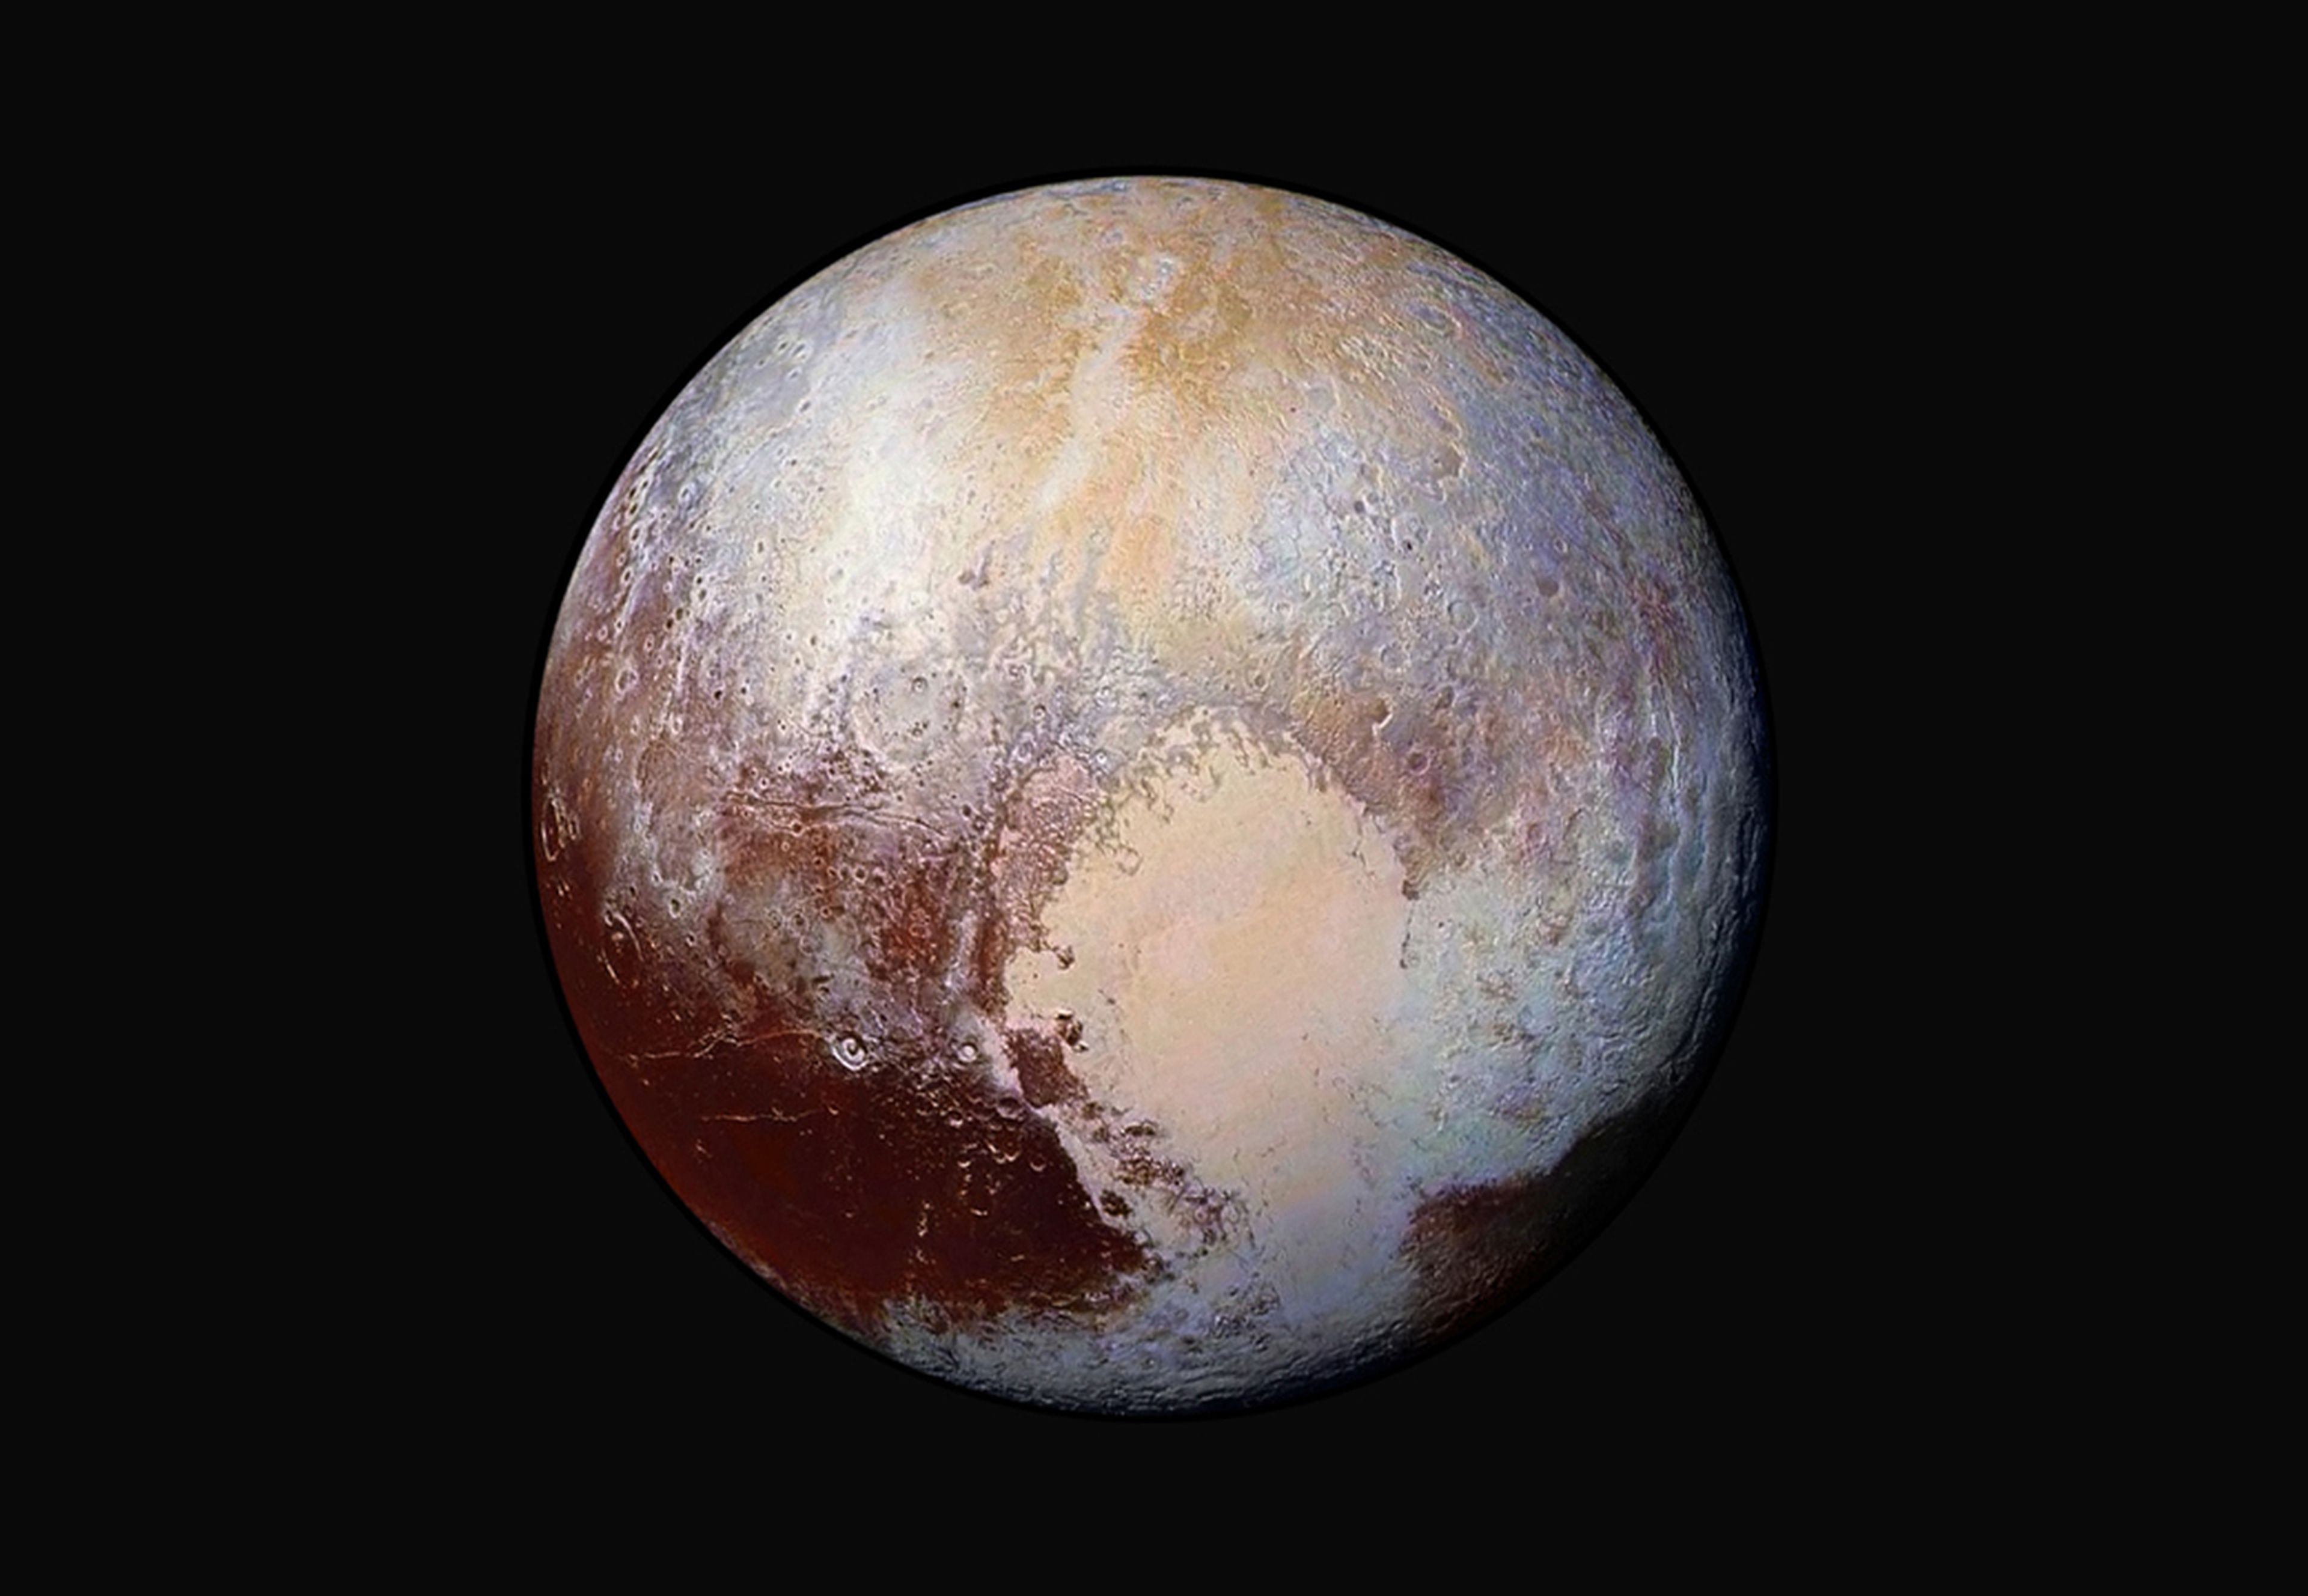 Imagen de Plutón tomada por la sonda New Horizons de la NASA